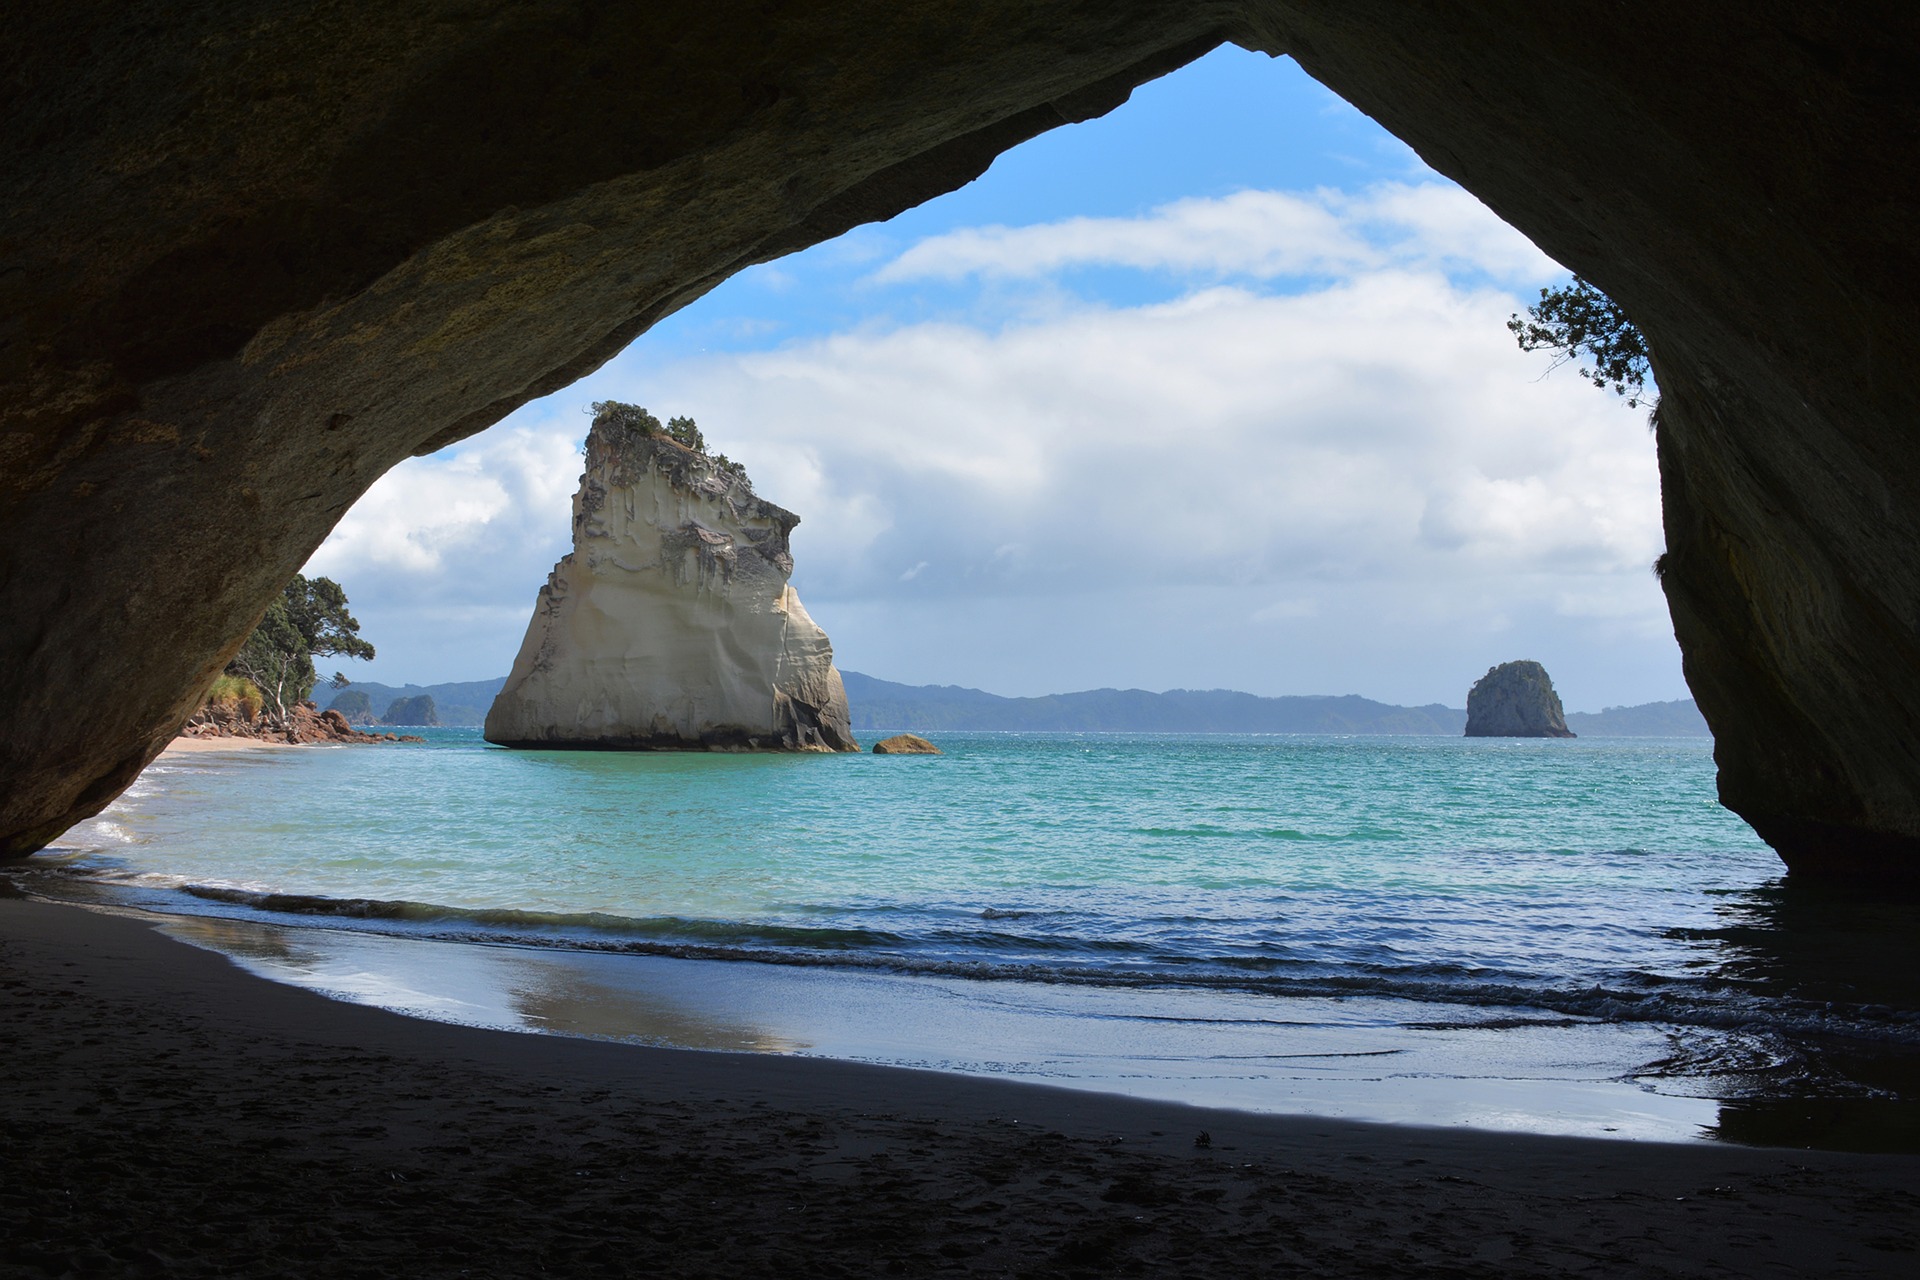 Une arche naturelle de pierre, l'océan, et voilà le romantisme assuré à Cathedral Cove! Crédit photo @annca - Pixabay